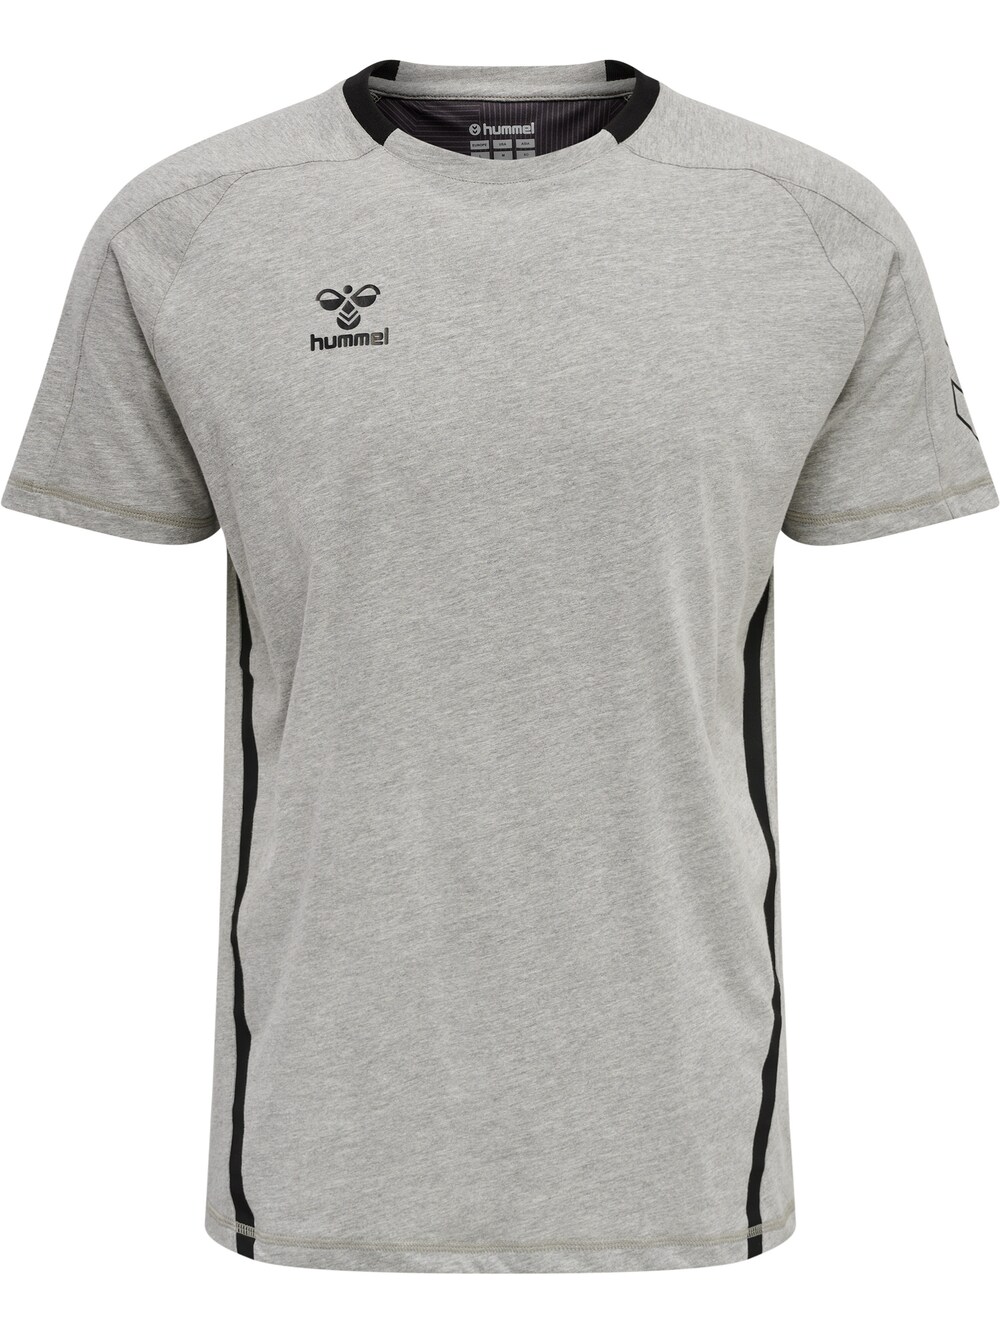 Рубашка для выступлений Hummel, пестрый серый рубашка для выступлений hummel пестрый серый